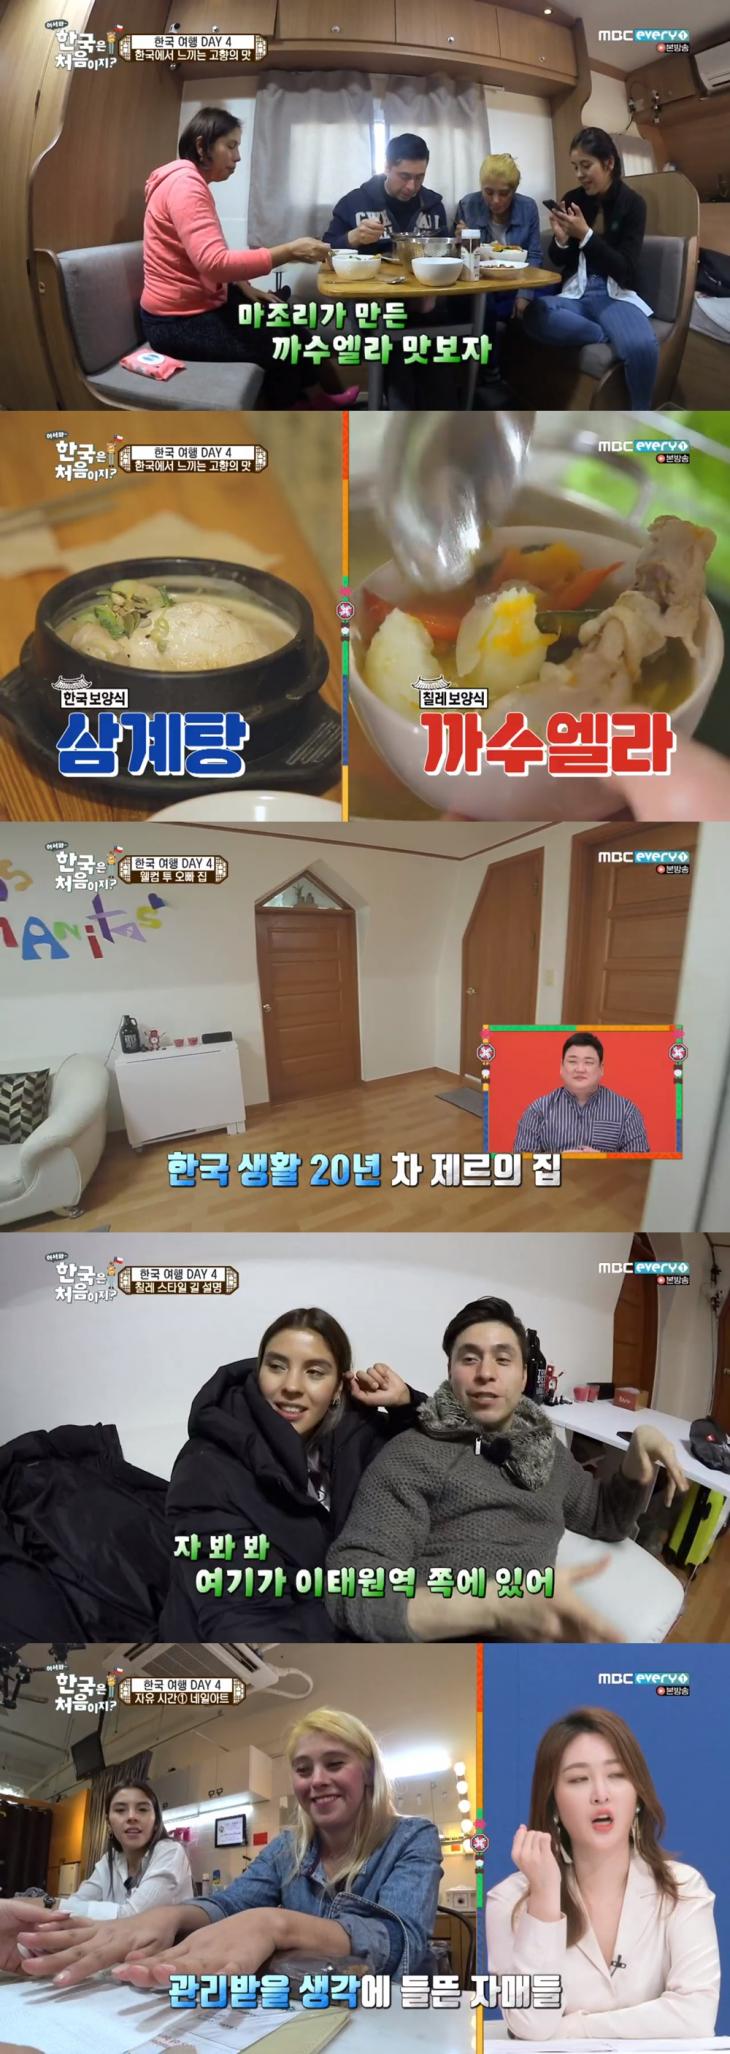 MBC 에브리원 '어서와 한국은 처음이지' 방송 캡쳐